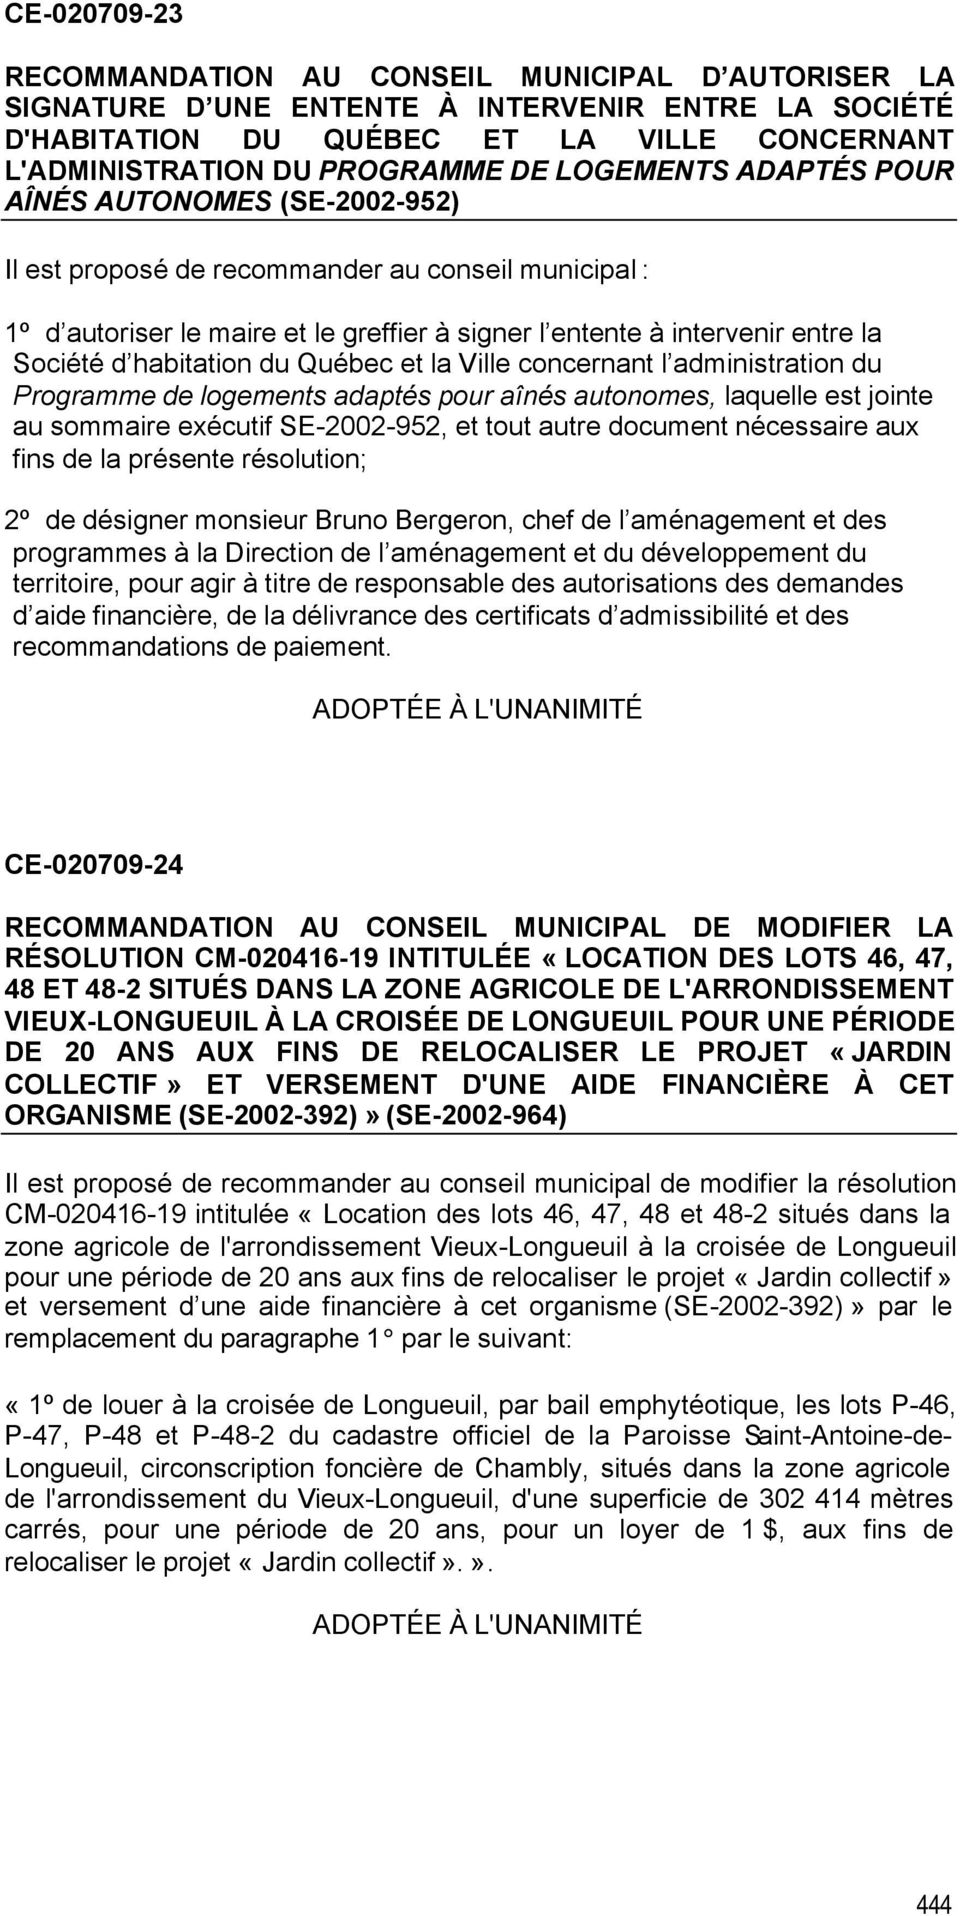 habitation du Québec et la Ville concernant l administration du Programme de logements adaptés pour aînés autonomes, laquelle est jointe au sommaire exécutif SE-2002-952, et tout autre document